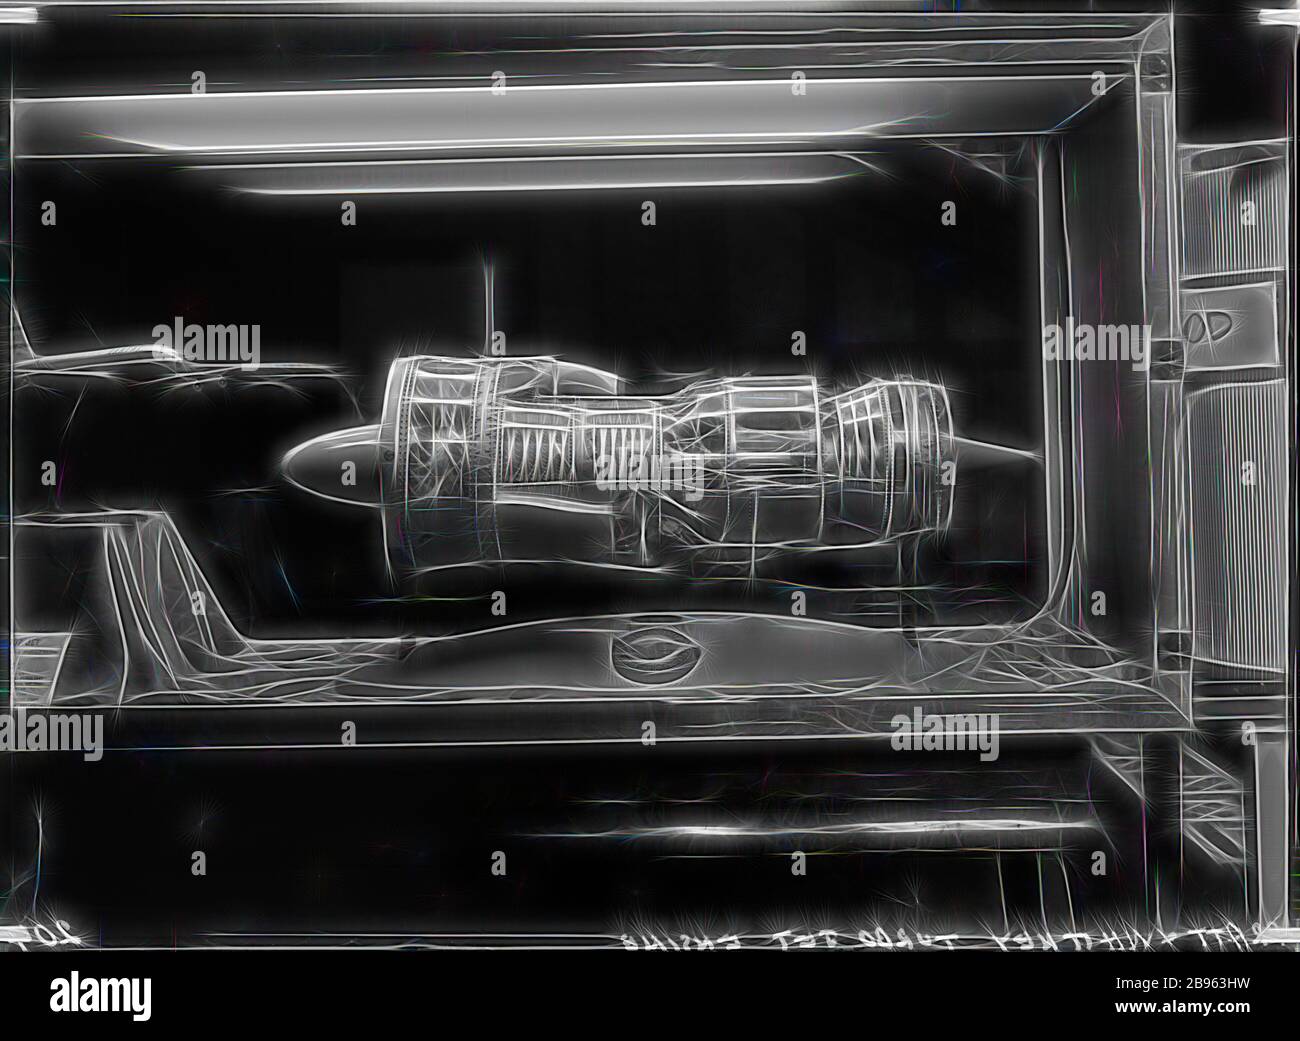 Négatif en verre - Pratt & Whitney Turbo Jet Engine, Museum of Applied Science (Science Museum), Melbourne, vers les années 1950, Photographie de Pratt & Whitney Turbo Jet Engine au Musée des sciences appliquées, Swanston Street, vers les années 1950., repensée par Gibon, conception d'un brillant chaleureux de luminosité et de rayonnement de rayons lumineux. L'art classique réinventé avec une touche moderne. La photographie inspirée du futurisme, qui embrasse l'énergie dynamique de la technologie moderne, du mouvement, de la vitesse et révolutionne la culture. Banque D'Images